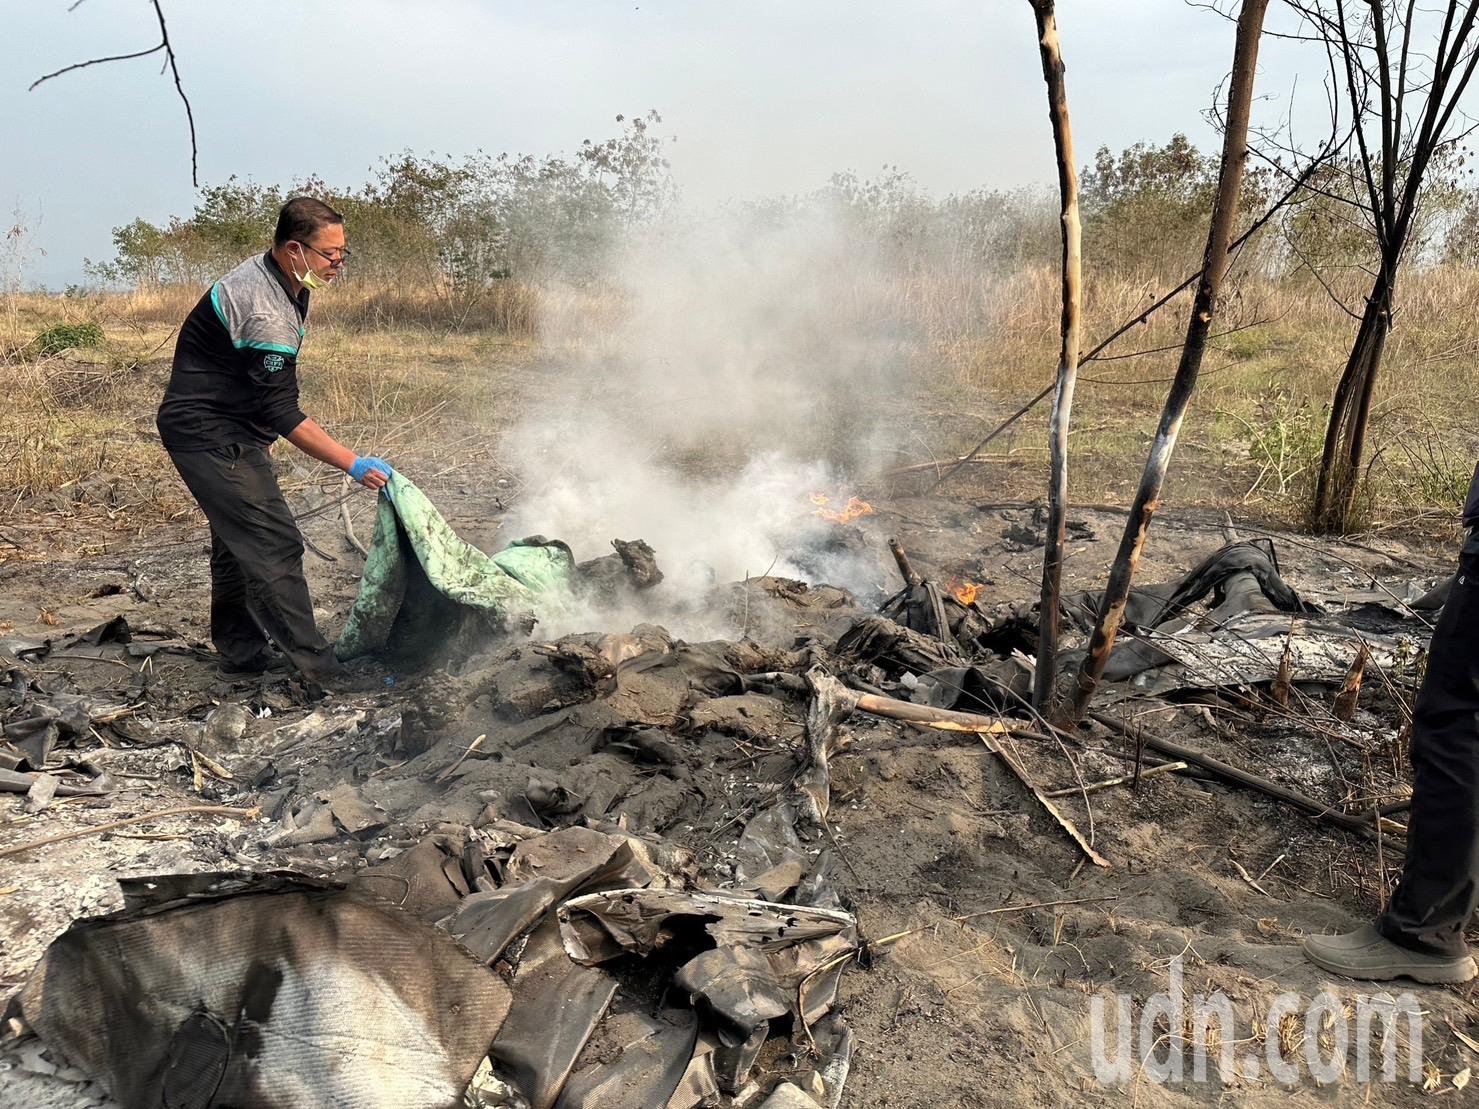 彰化县顺风飞行俱乐部的轻航机坠毁后燃烧，飞行教官和学员双亡。记者简慧珍／摄影